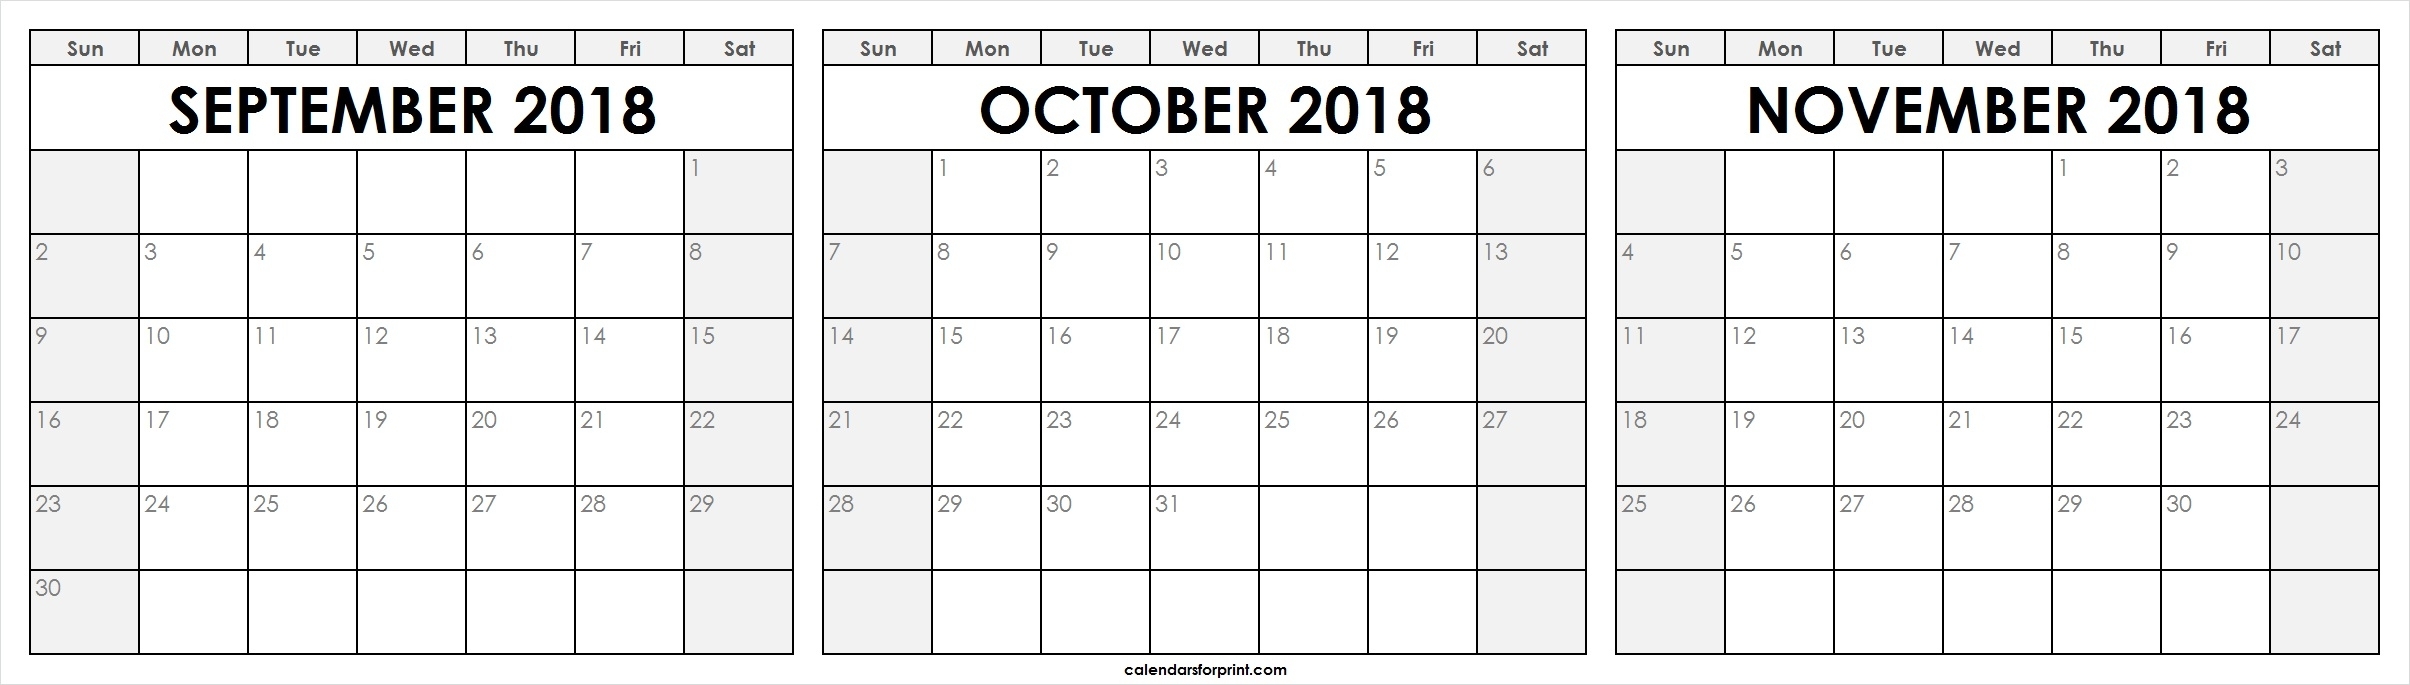 September October November 2018 Calendar Printable Templates regarding 3 Month Calendar Printable With Notes September October November